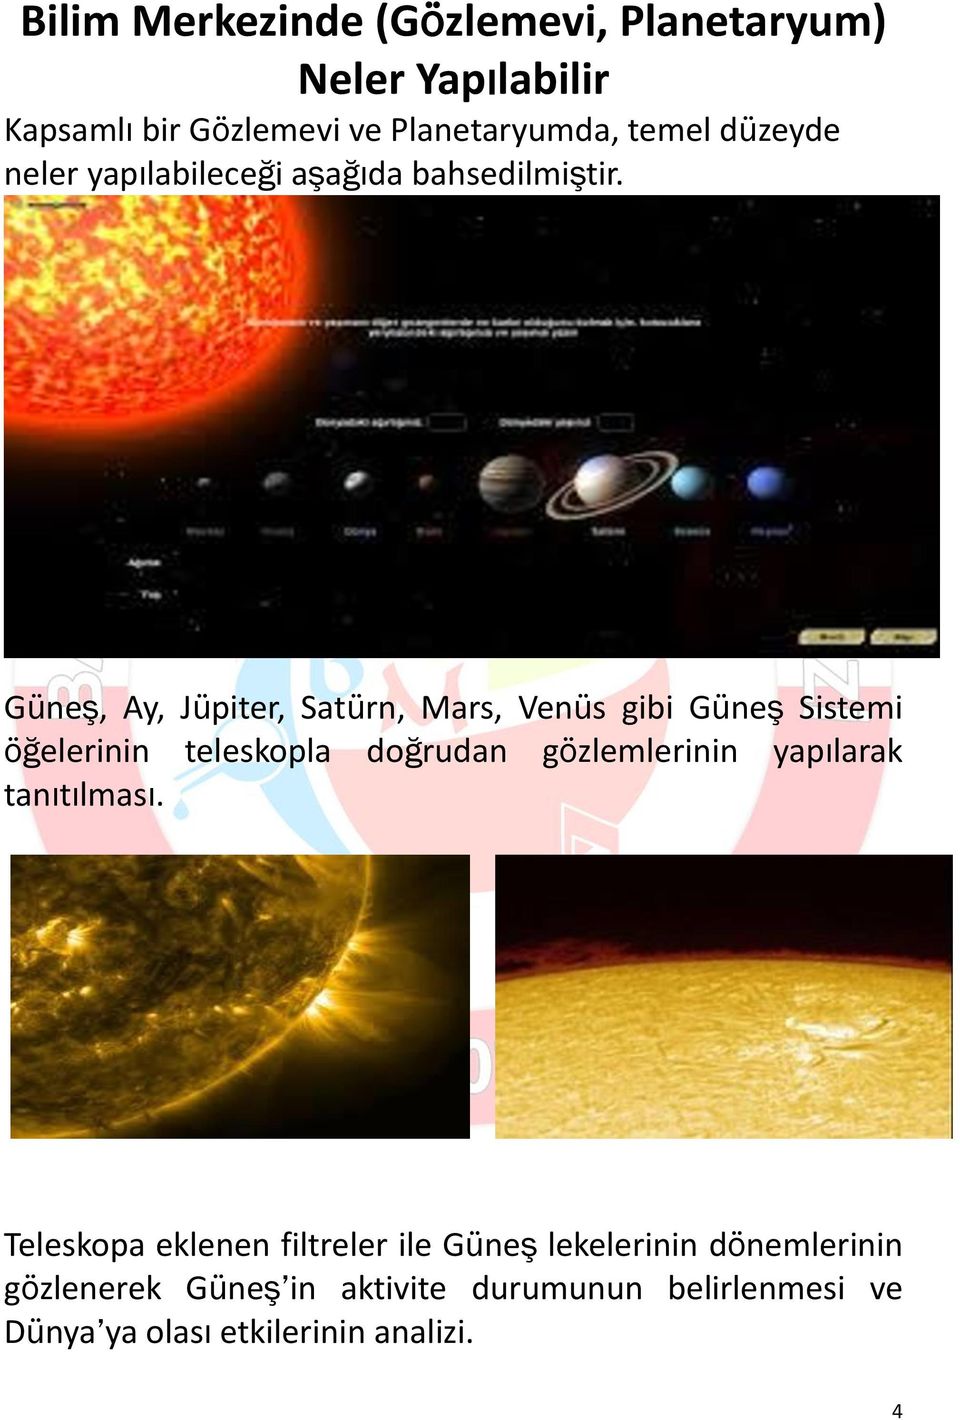 Güneş, Ay, Jüpiter, Satürn, Mars, Venüs gibi Güneş Sistemi öğelerinin teleskopla doğrudan gözlemlerinin